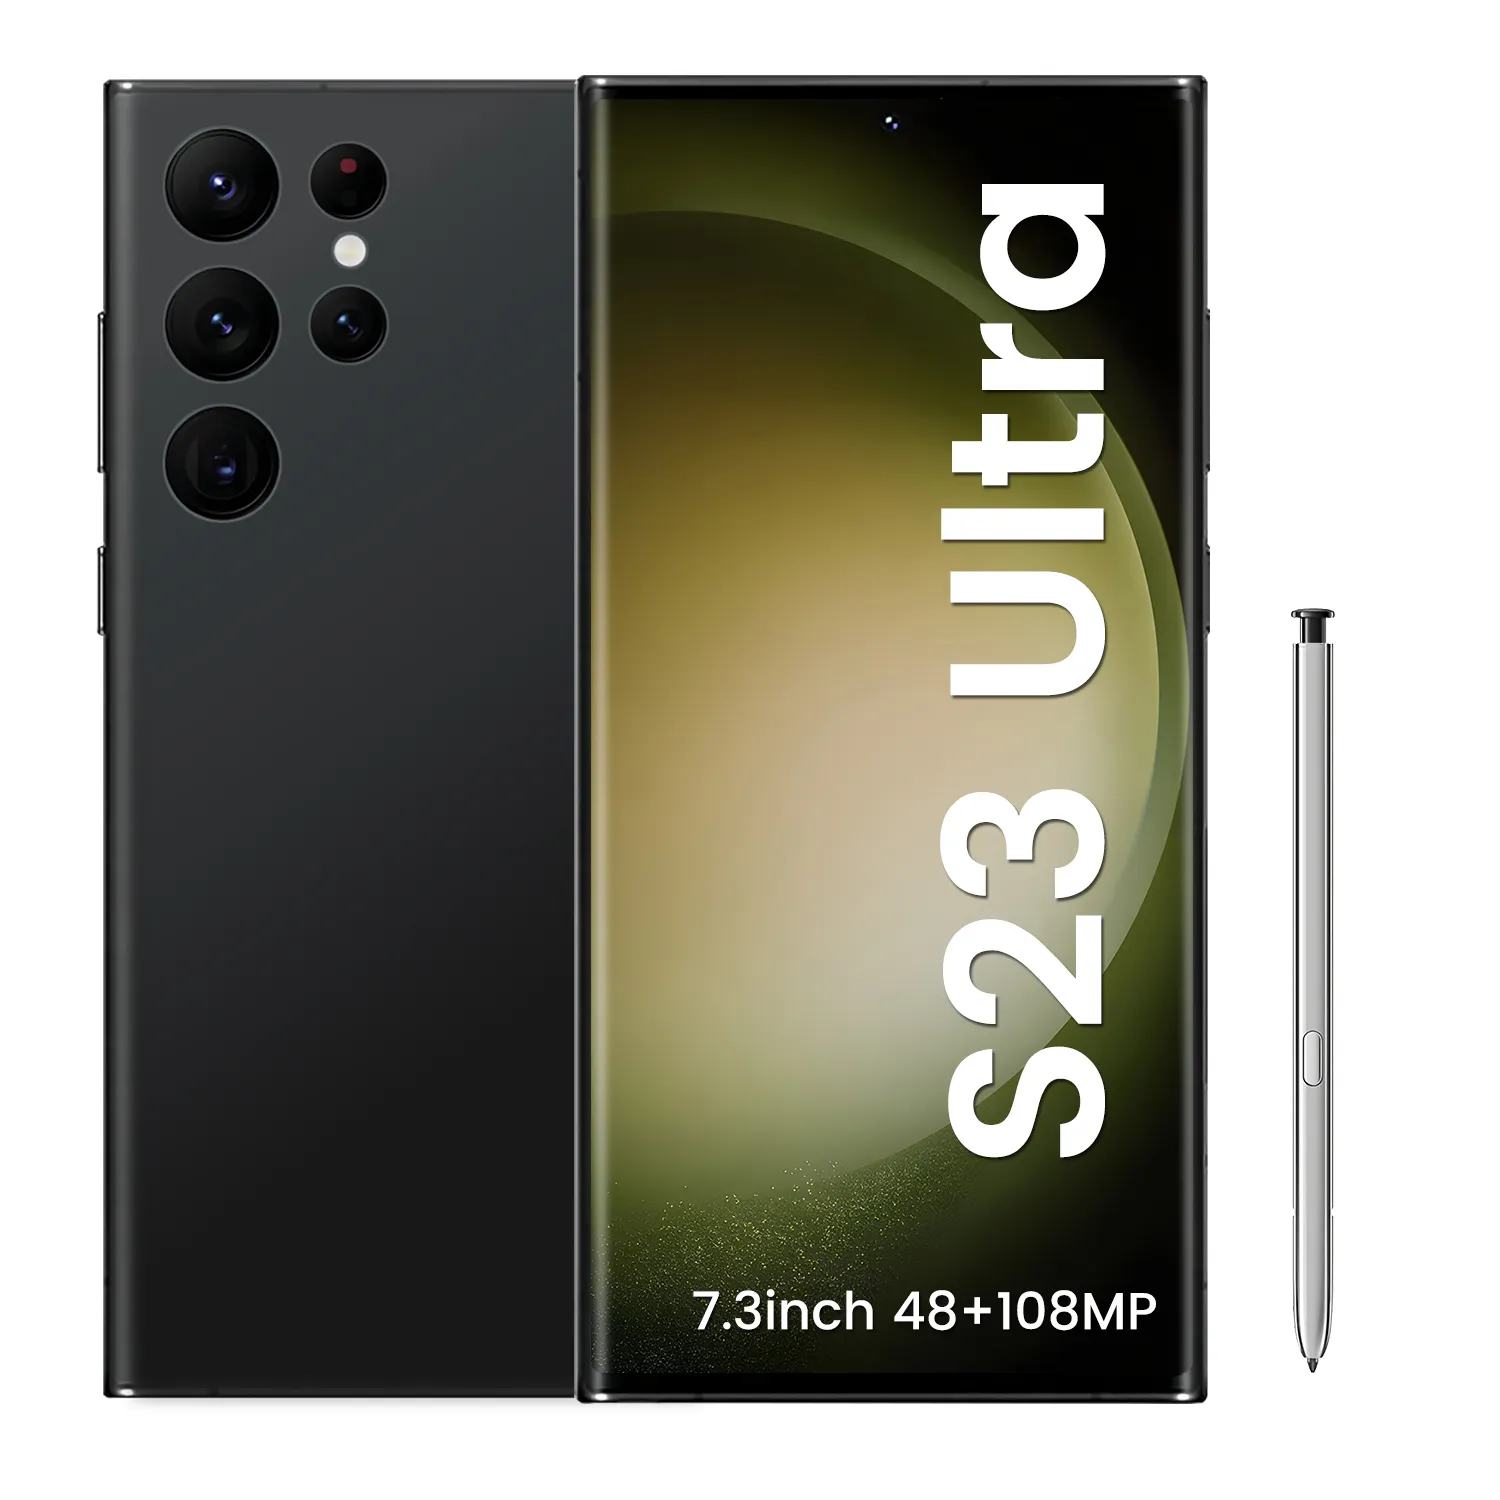 Горячая распродажа! S23 ультра Оригинальный разблокированный смарт-телефонов 48MP + 108MP 16GB + жесткий диск на 1 ТБ 7,3 дюйма 5G мобильный телефон на андроиде